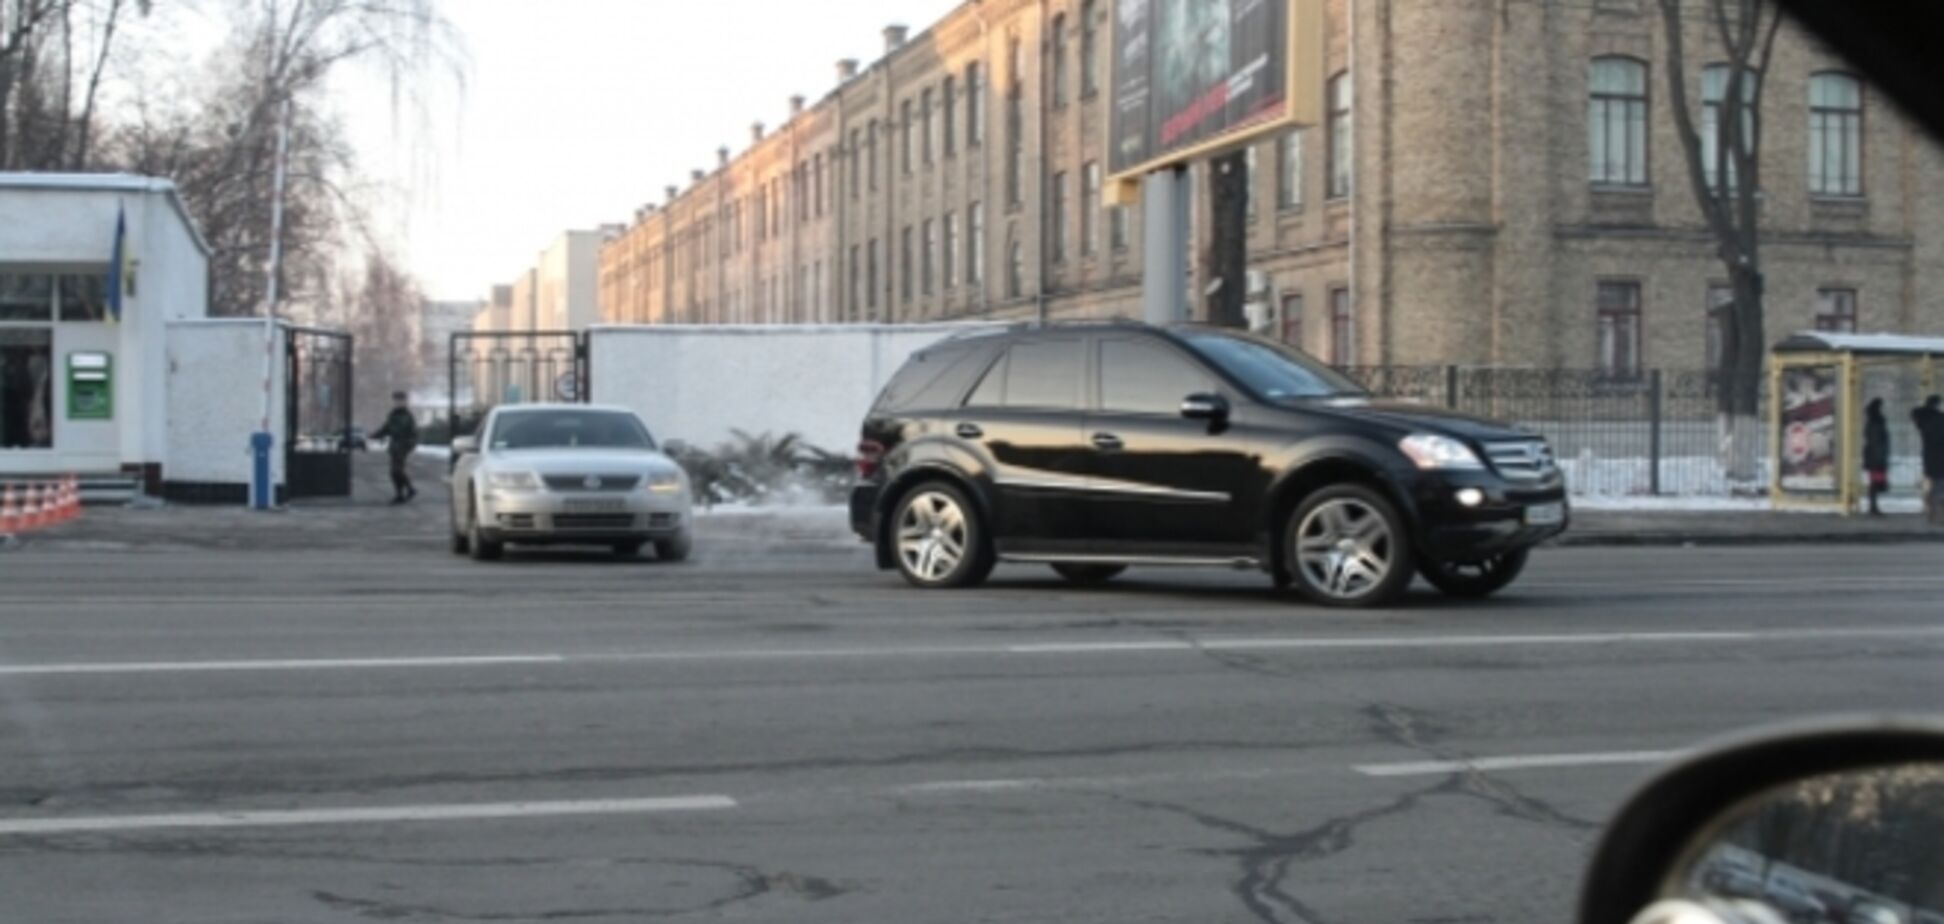 Джип с министром обороны нарушил в Киеве правила дорожного движения - СМИ